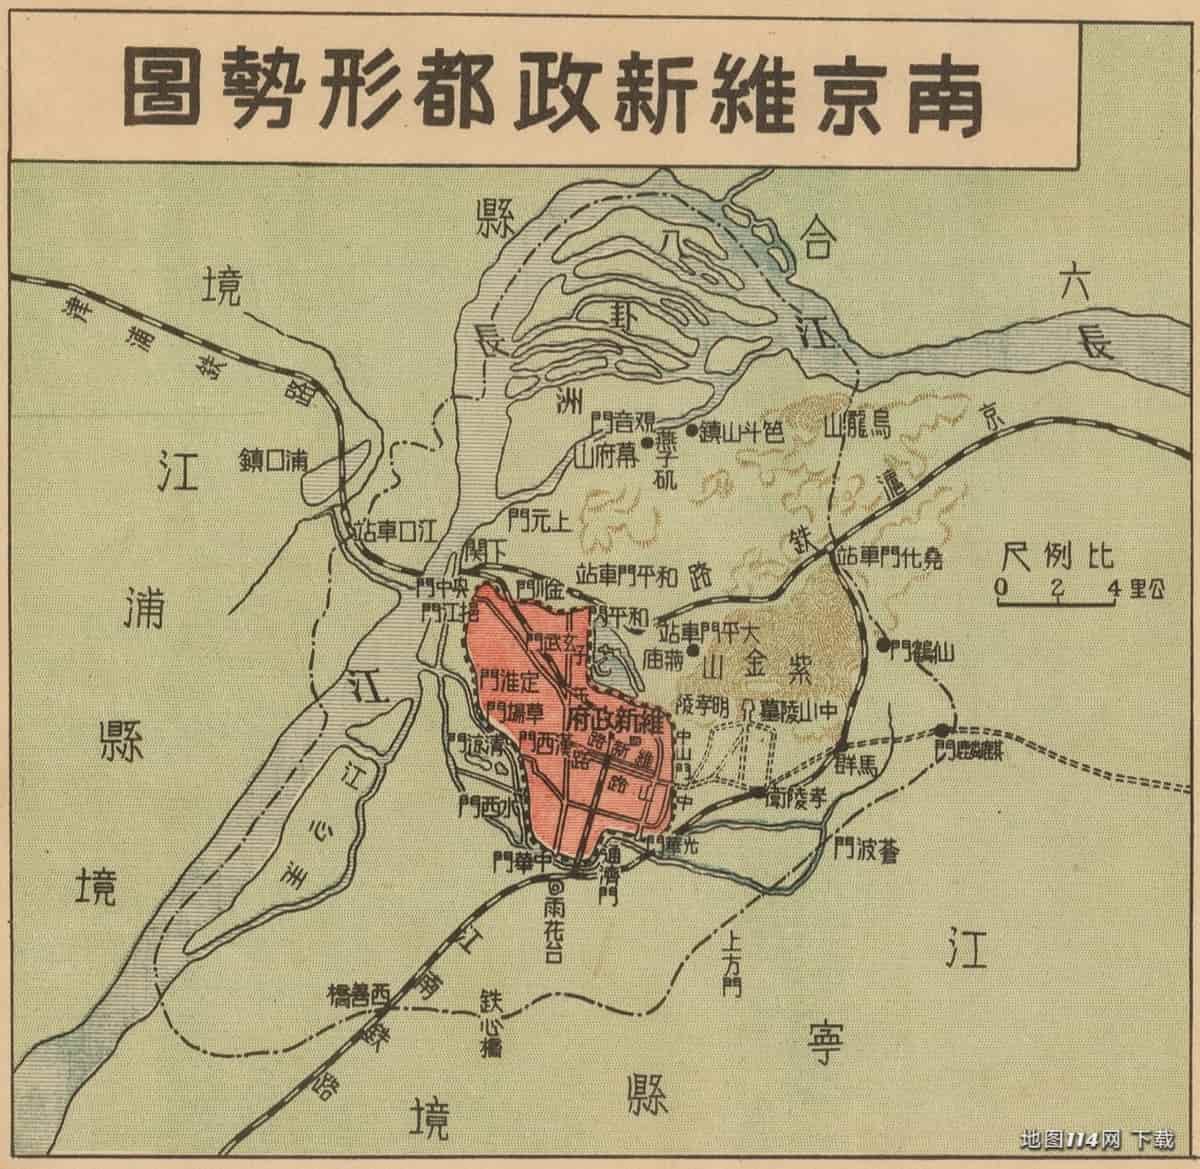 1939年汪伪建国大地图附图南京维新政都形势图.jpg